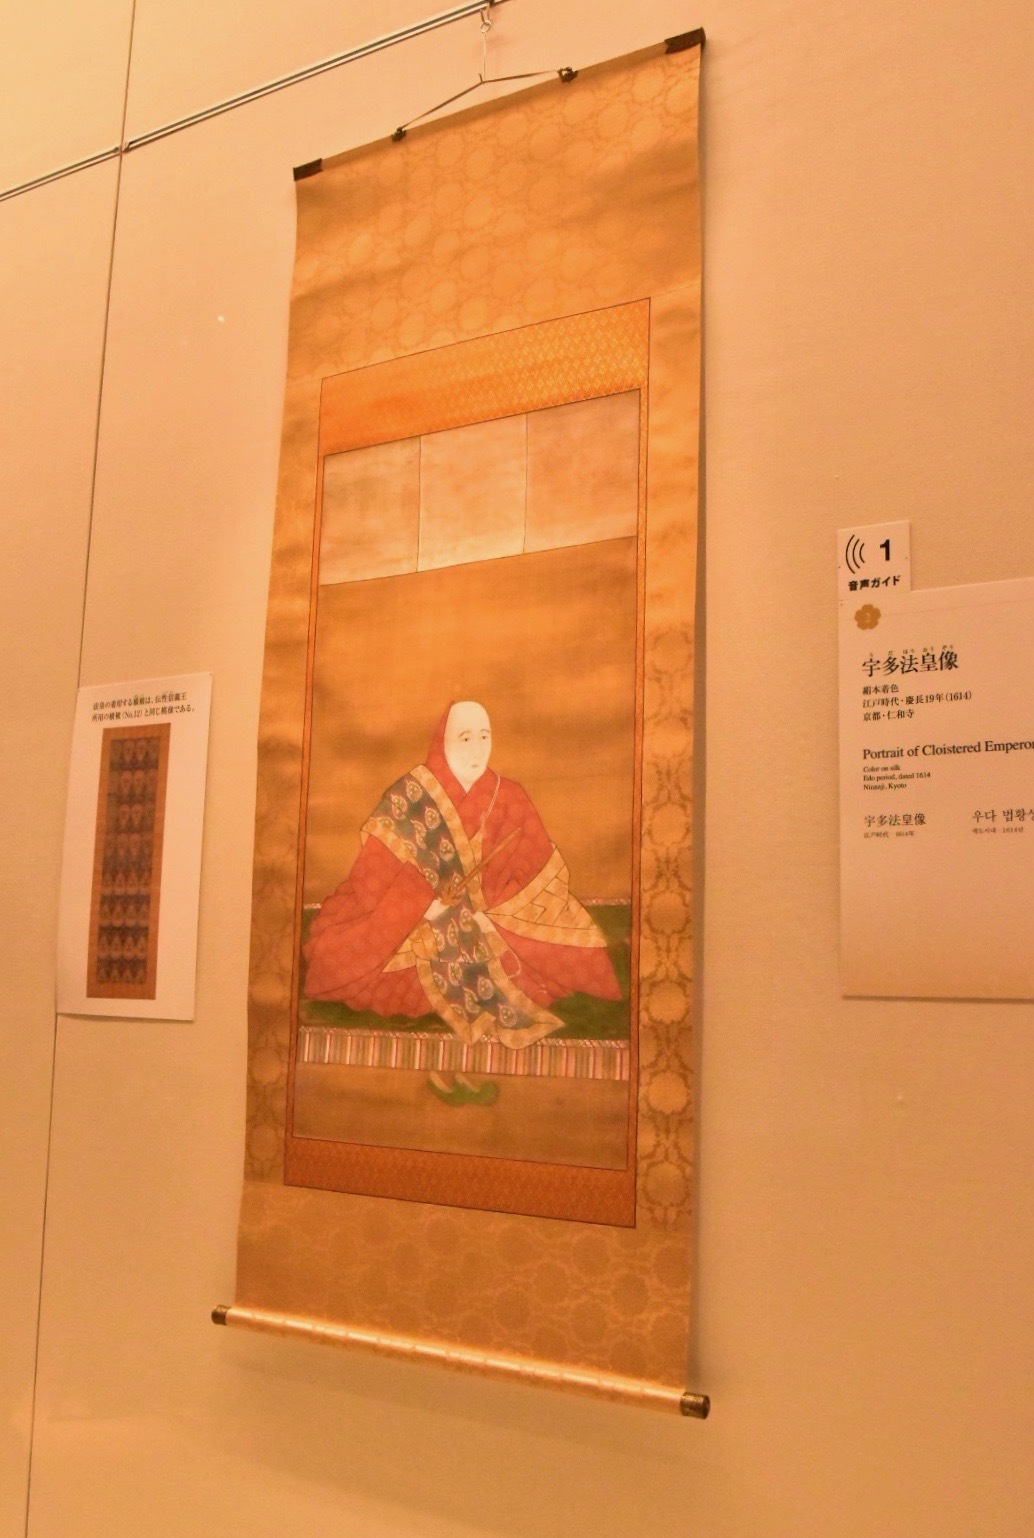 宇多法皇像　江戸時代　慶長19年（1614）　京都・仁和寺